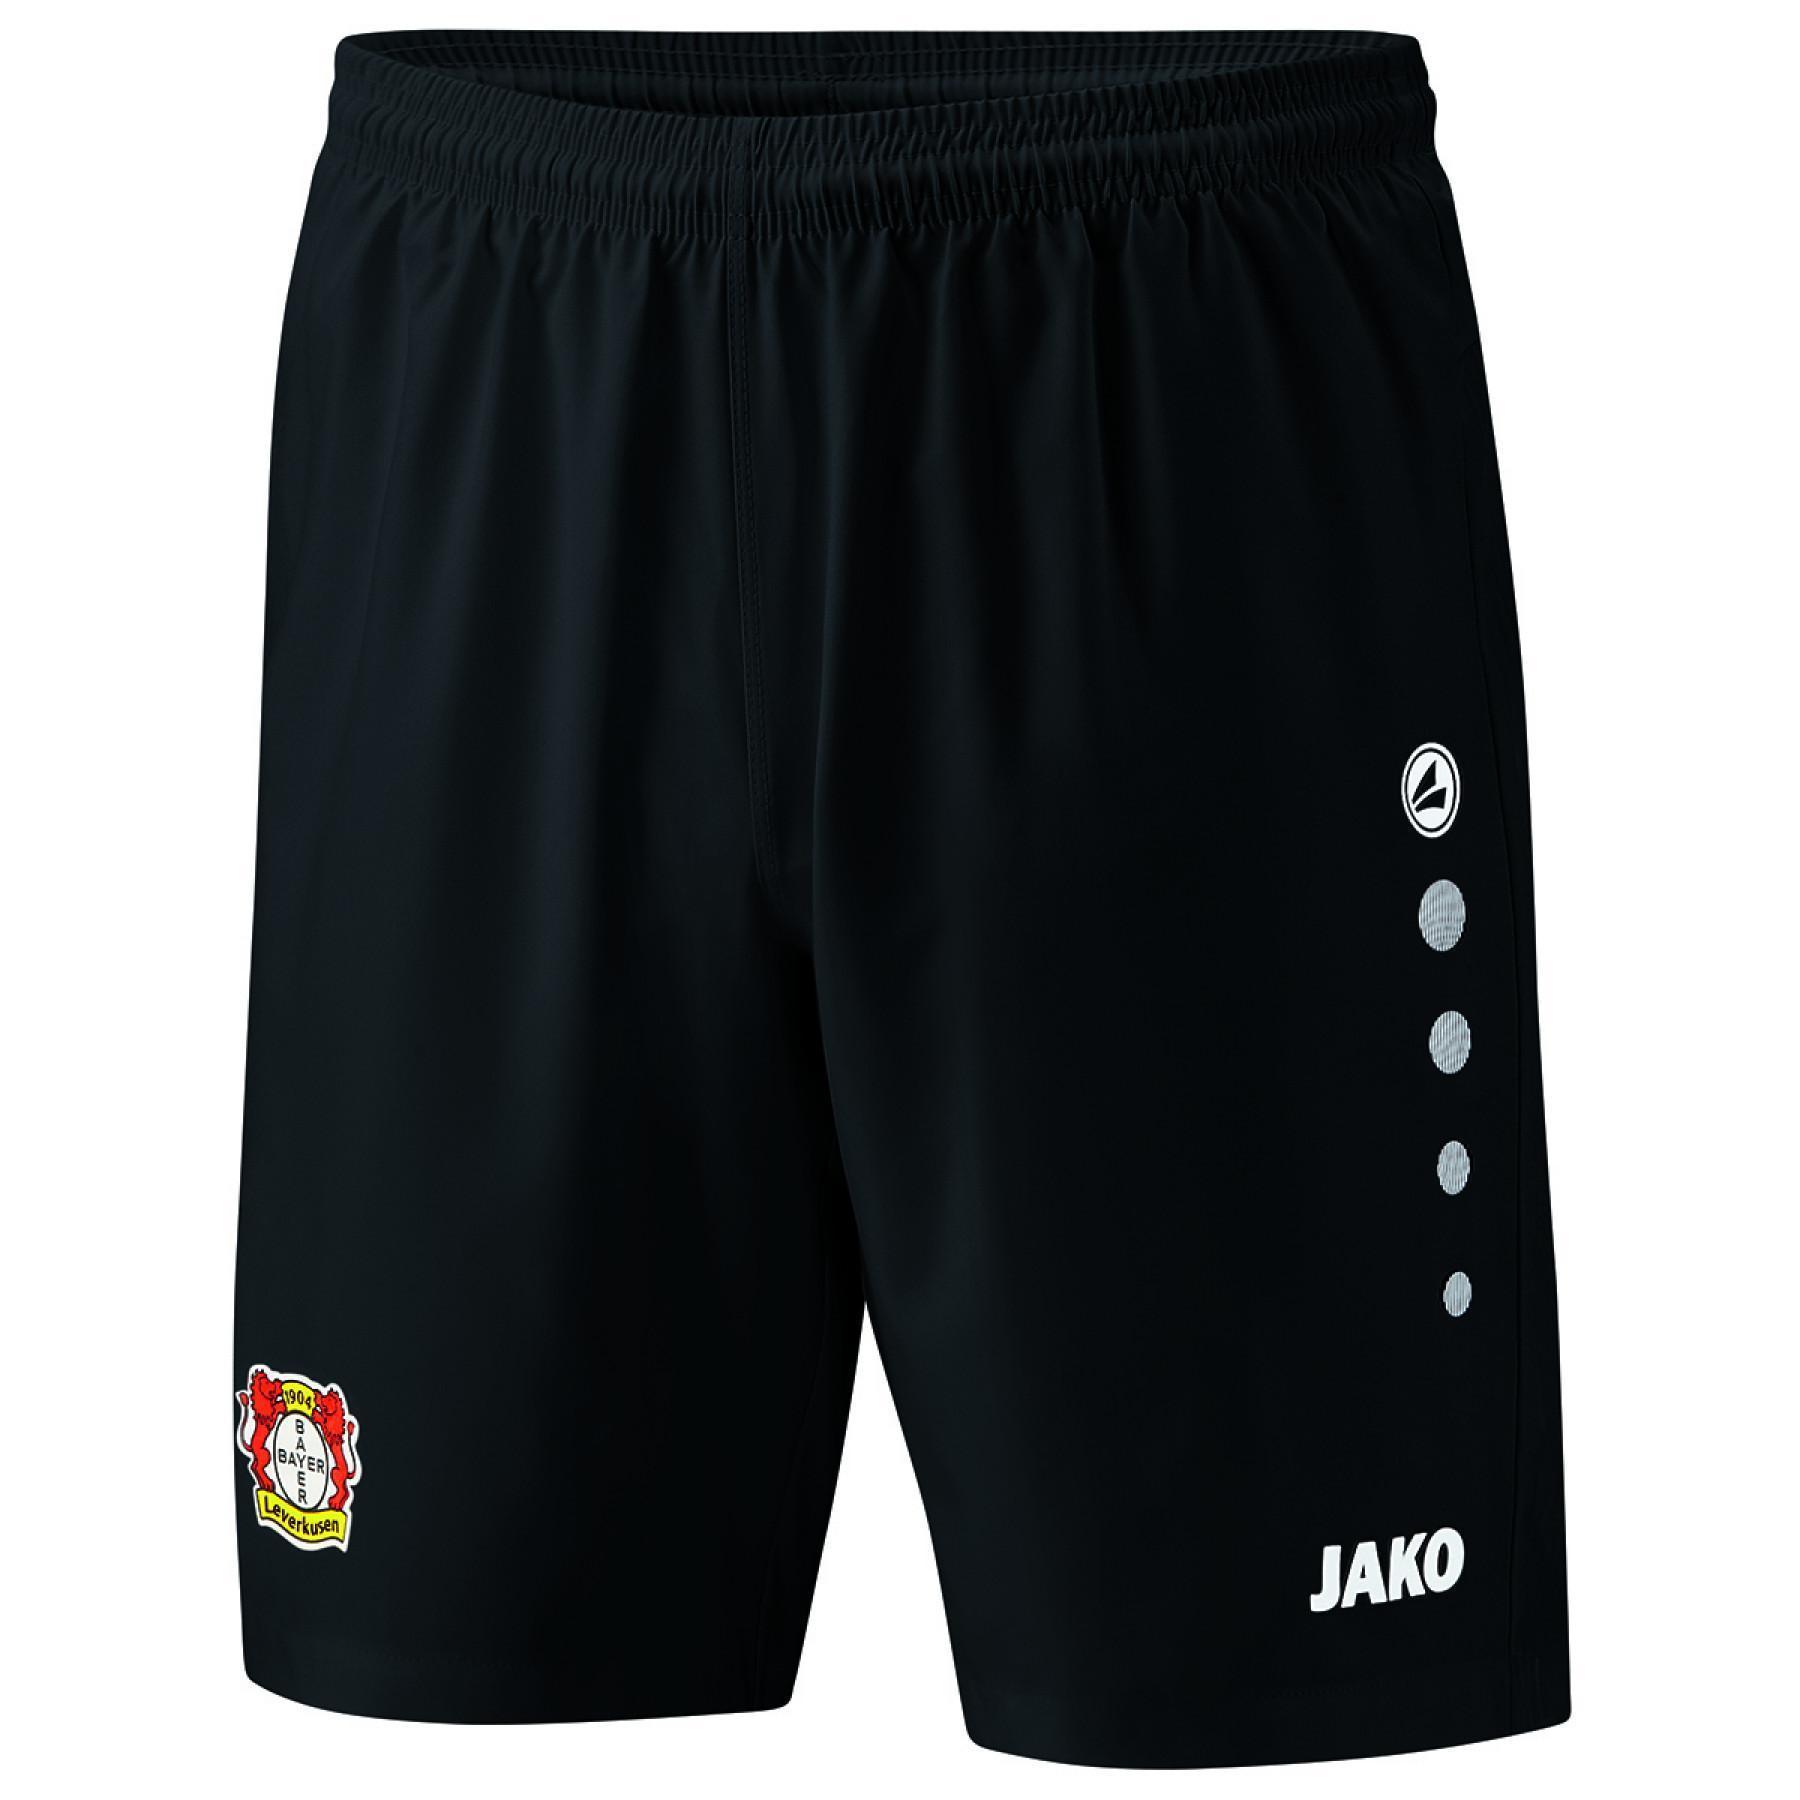 Kinder shorts Bayer Leverkusen domicile 2019/20